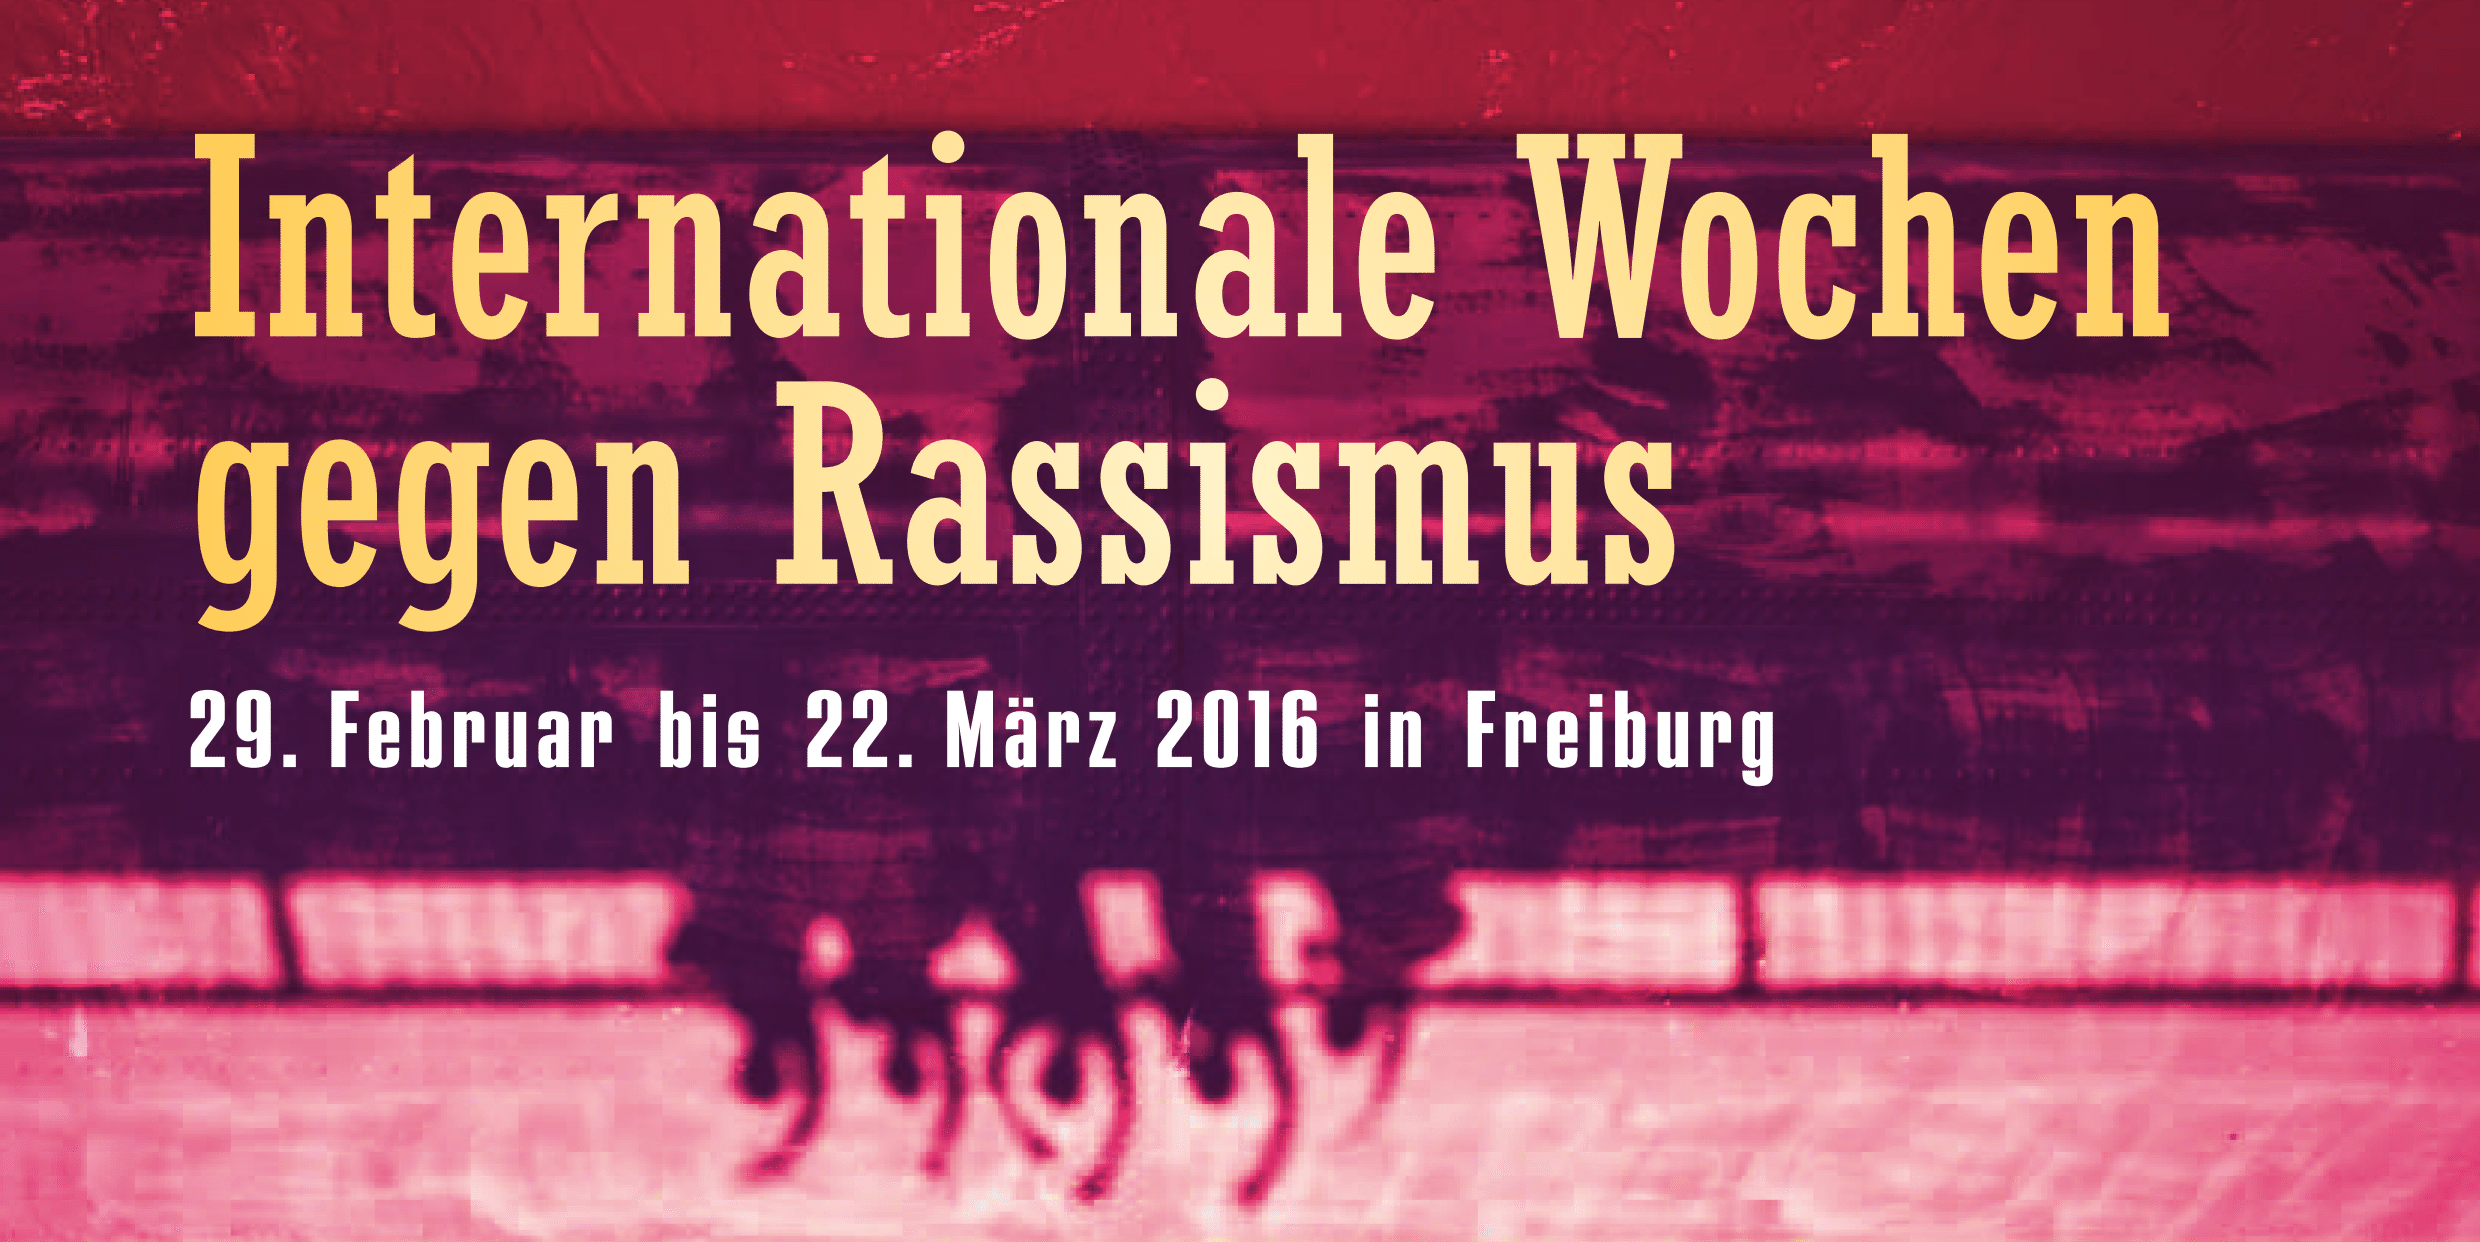 Internationale Wochen gegen Rassismus 2016 in Freiburg